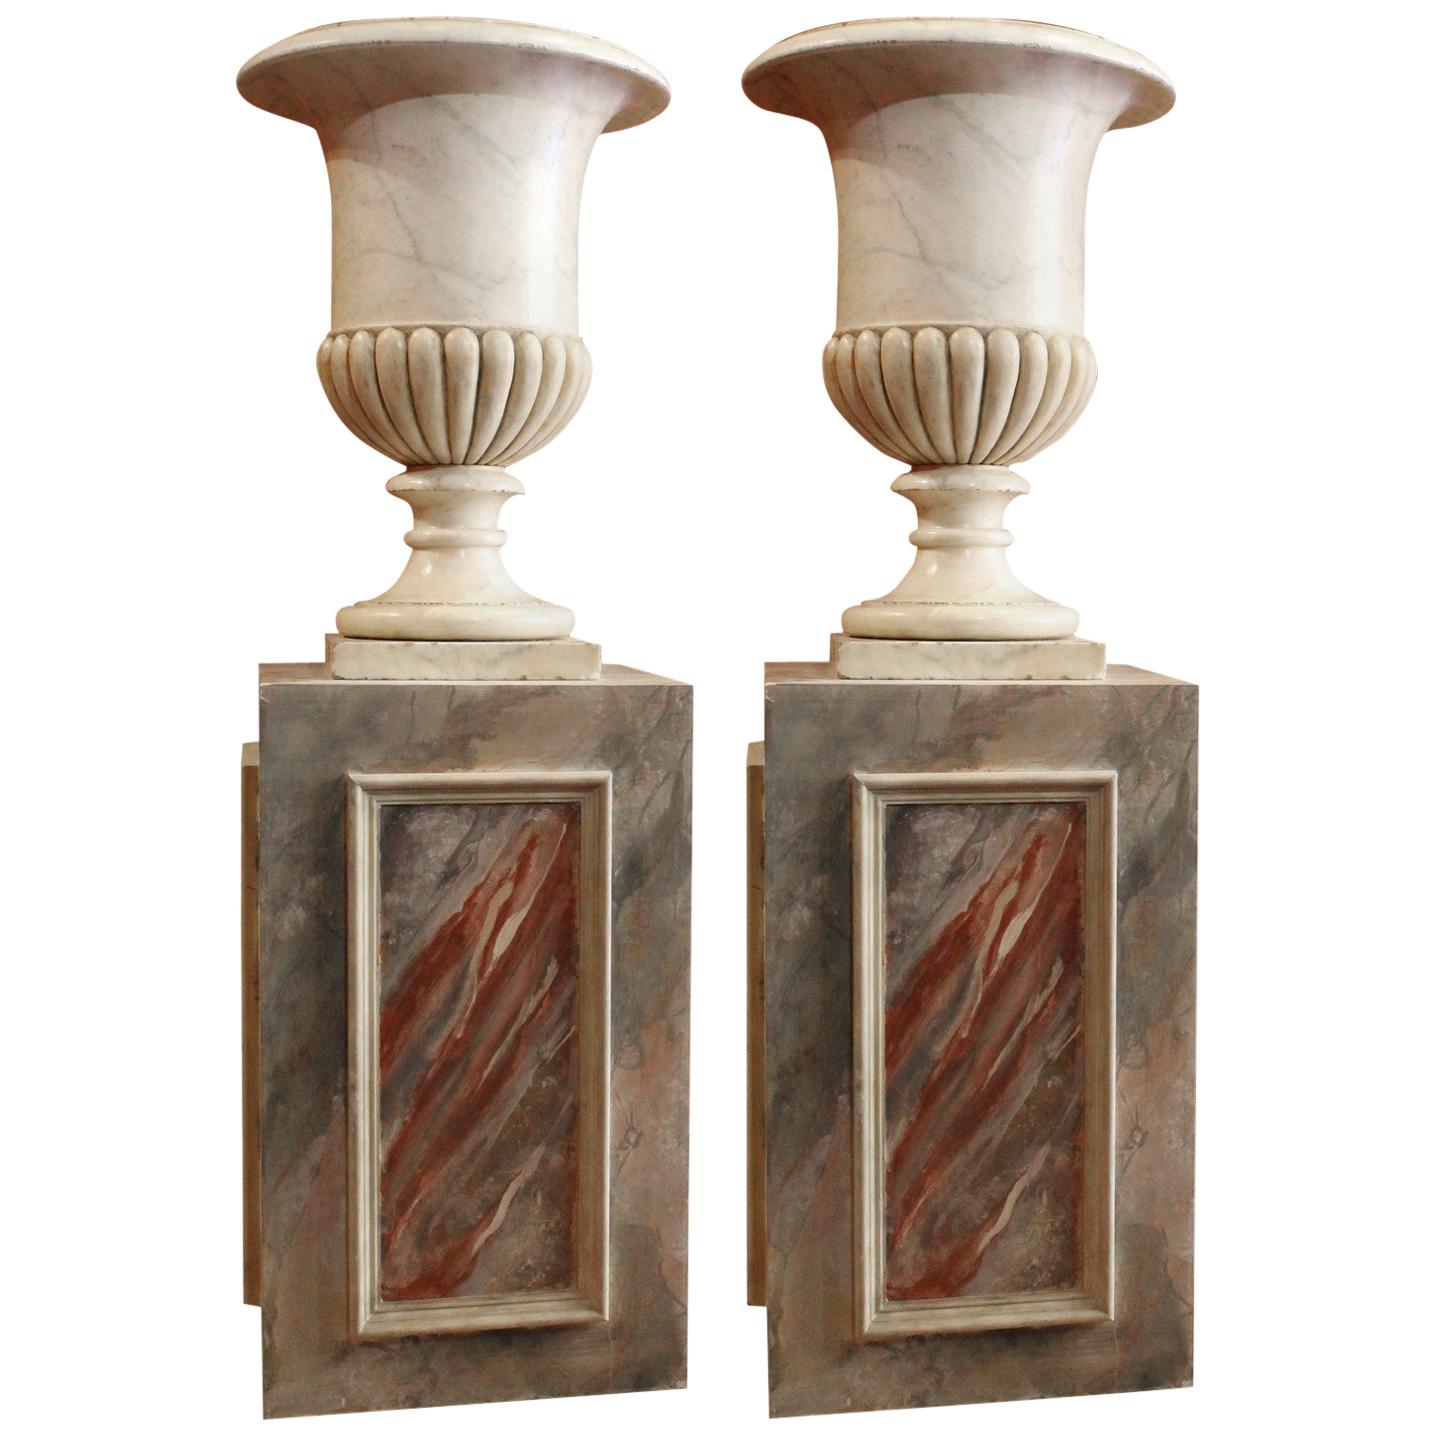 Antique 18th Century Italian Neoclassical Carrara Marble Urn Vases on Pedestals